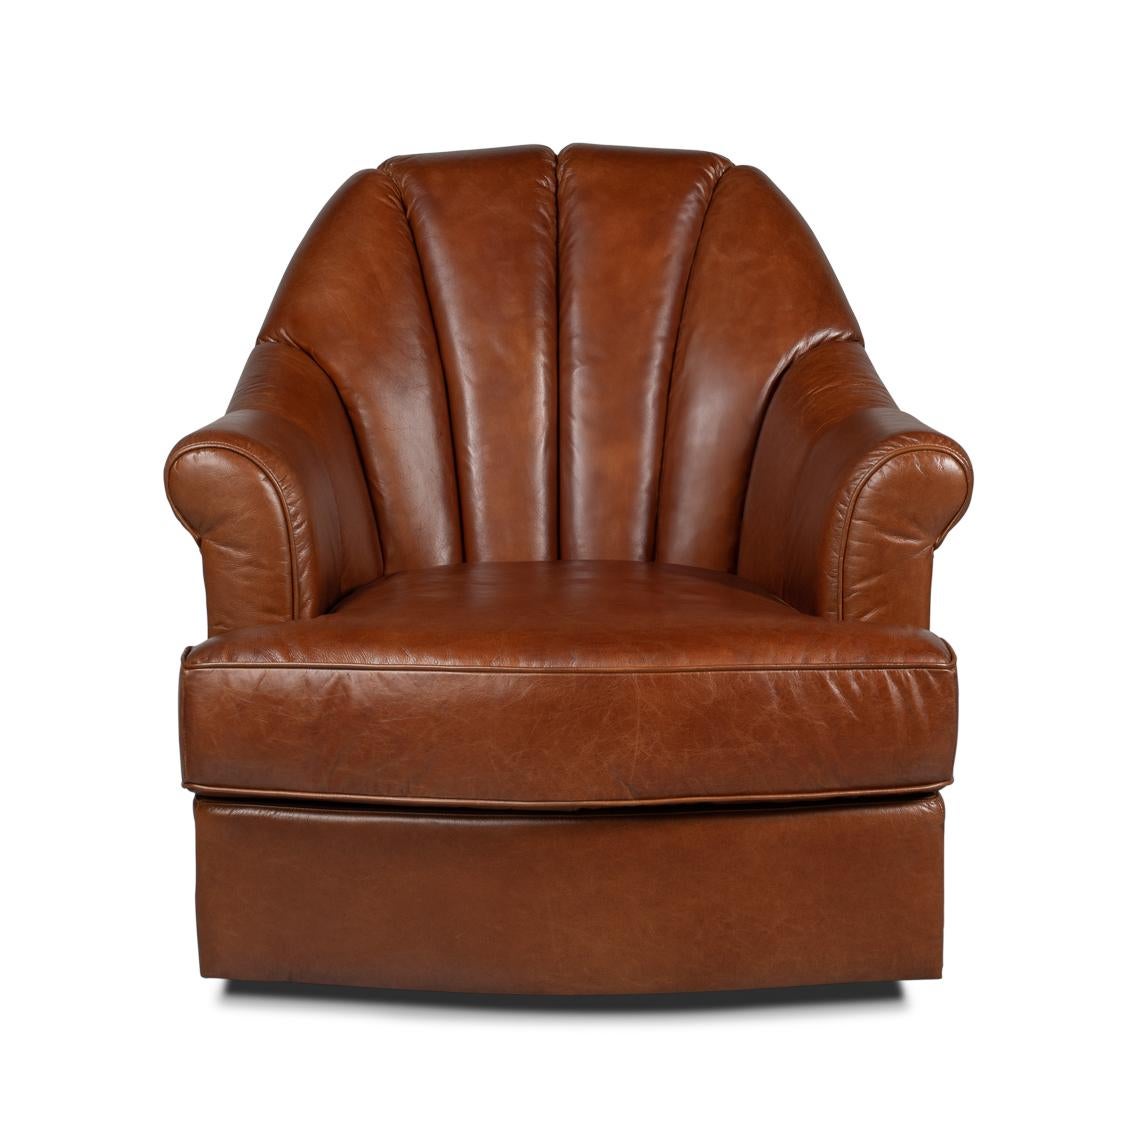 Eine Oase der Entspannung, wo klassisches Design auf wolkengleichen Komfort trifft. Mit seinen großzügig gepolsterten, gerollten Armlehnen und dem tiefen, einladenden Sitzkissen ist dieser Sessel aus hochwertigem, vollnarbigem Leder, das Wärme und